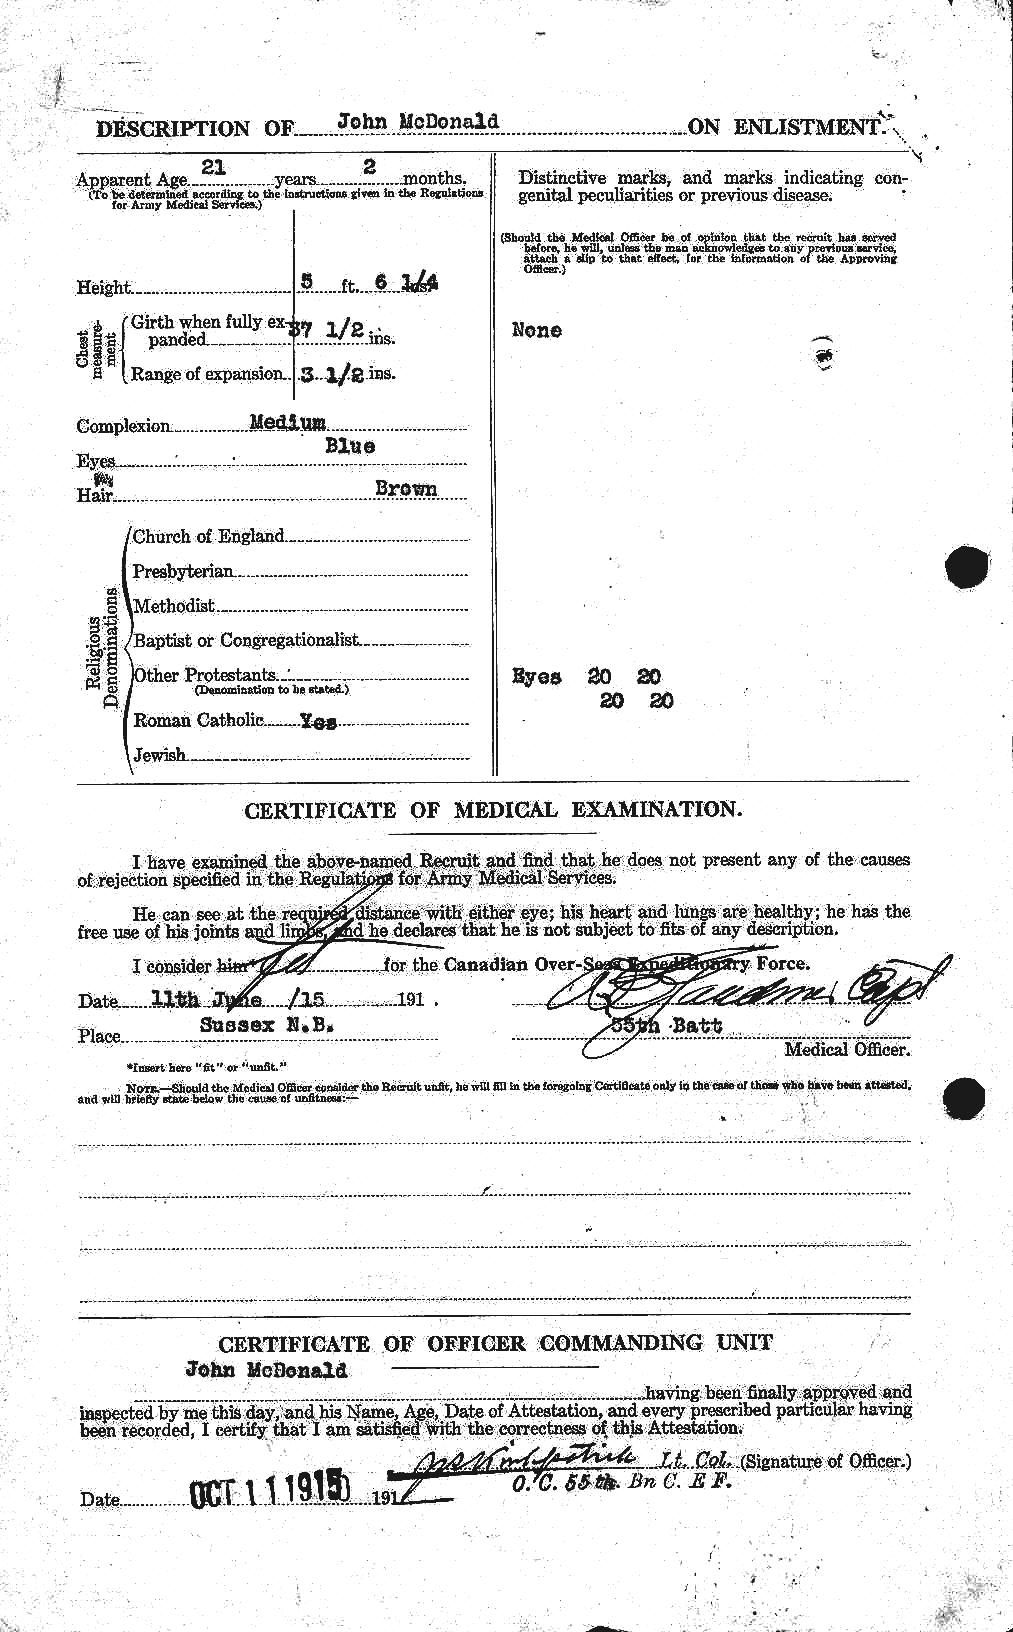 Dossiers du Personnel de la Première Guerre mondiale - CEC 532223b